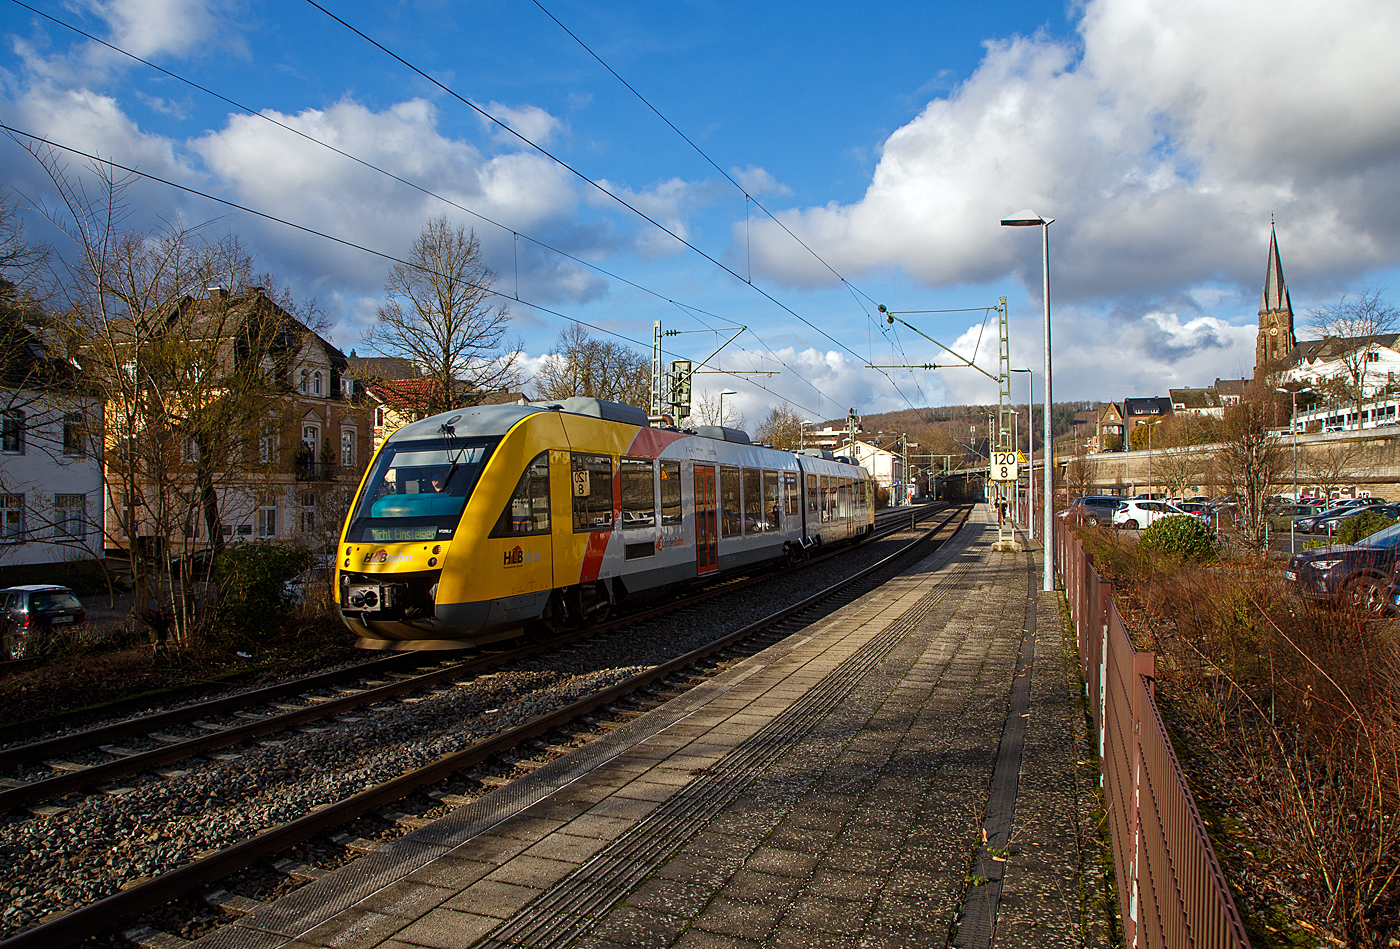 Der VT 255 (95 80 0648 155-9 D-HEB / 95 80 0648 655-8 D-HEB) ein Alstom Coradia LINT 41 der HLB (Hessische Landesbahn GmbH), fährt am 17.01.2023,  als RB 93  Rothaarbahn  (Bad Berleburg - Kreuztal -Siegen - Betzdorf), vom Bahnhof Kirchen (Sieg) weiter nach Betzdorf (Sieg).

Betzdorf (Sieg) ist der Ziel- und Endbahnhof, daher steht nun am Zugzielanzeiger „Nicht Einsteigen“.